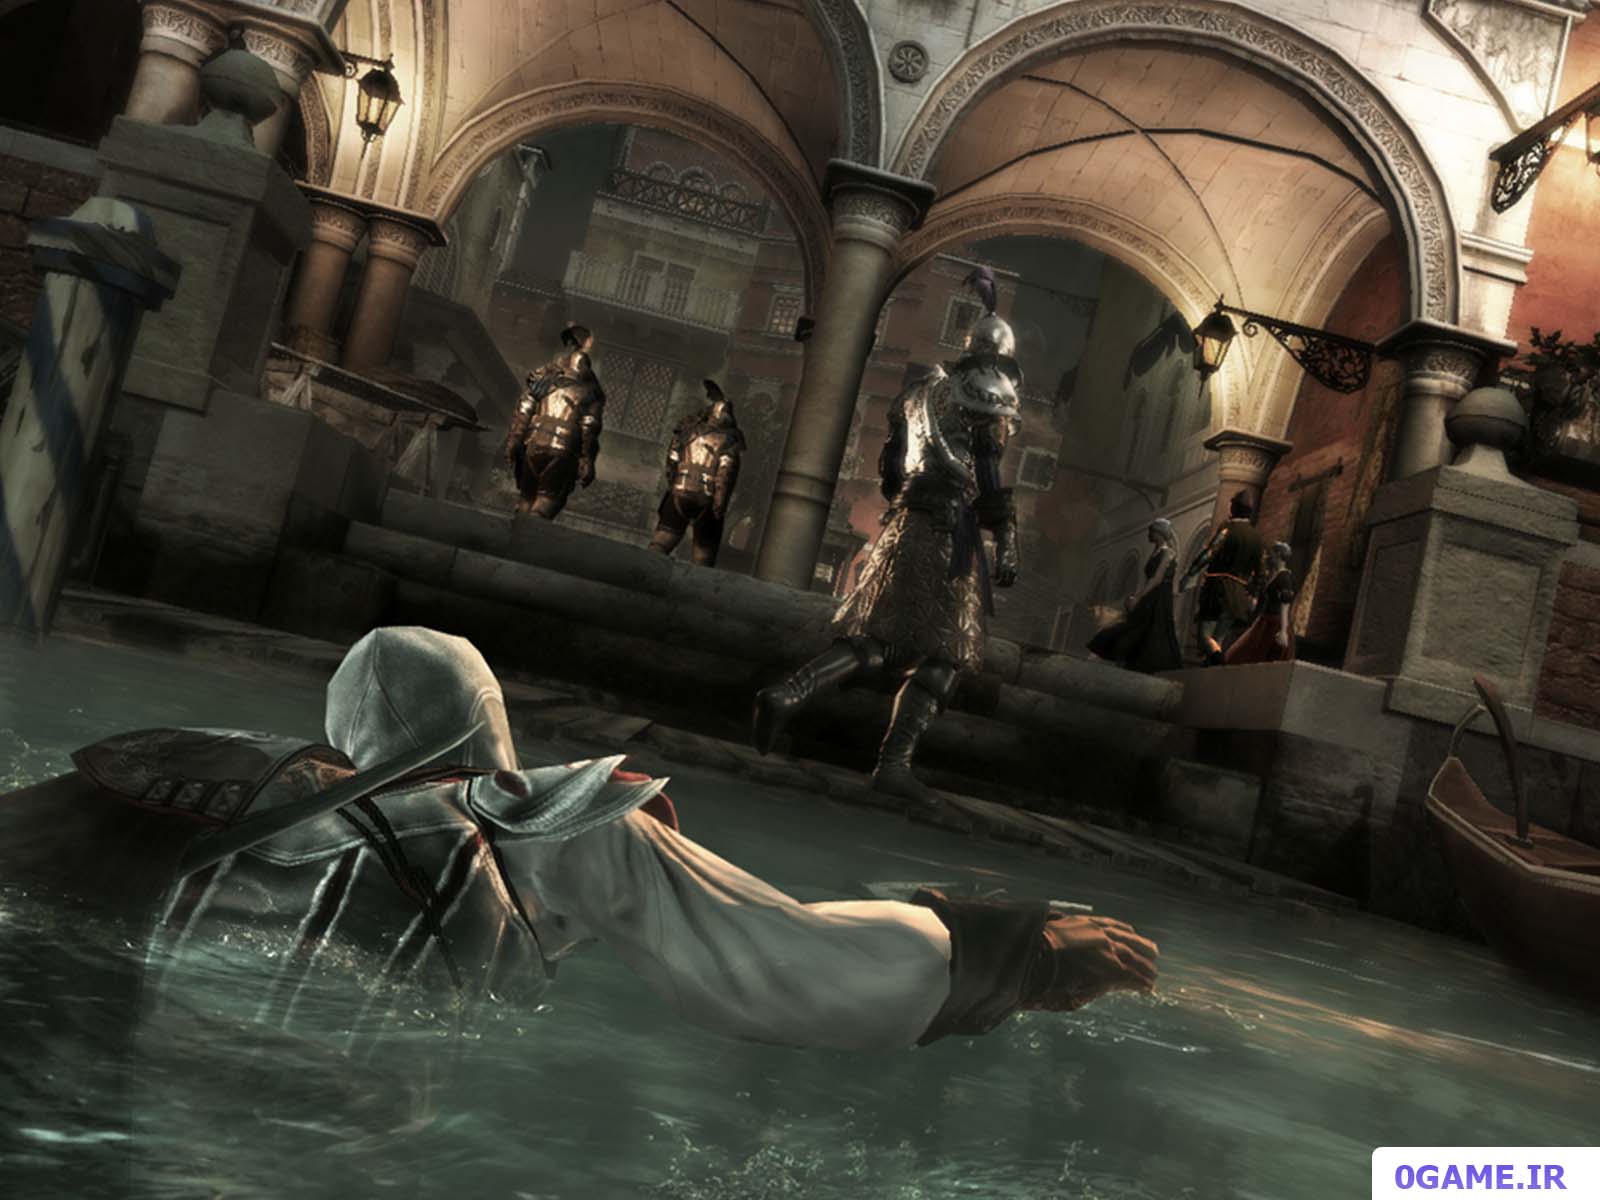 دانلود بازی اساسینز کرید 2 (Assassin's Creed II) نسخه کامل برای کامپیوتر